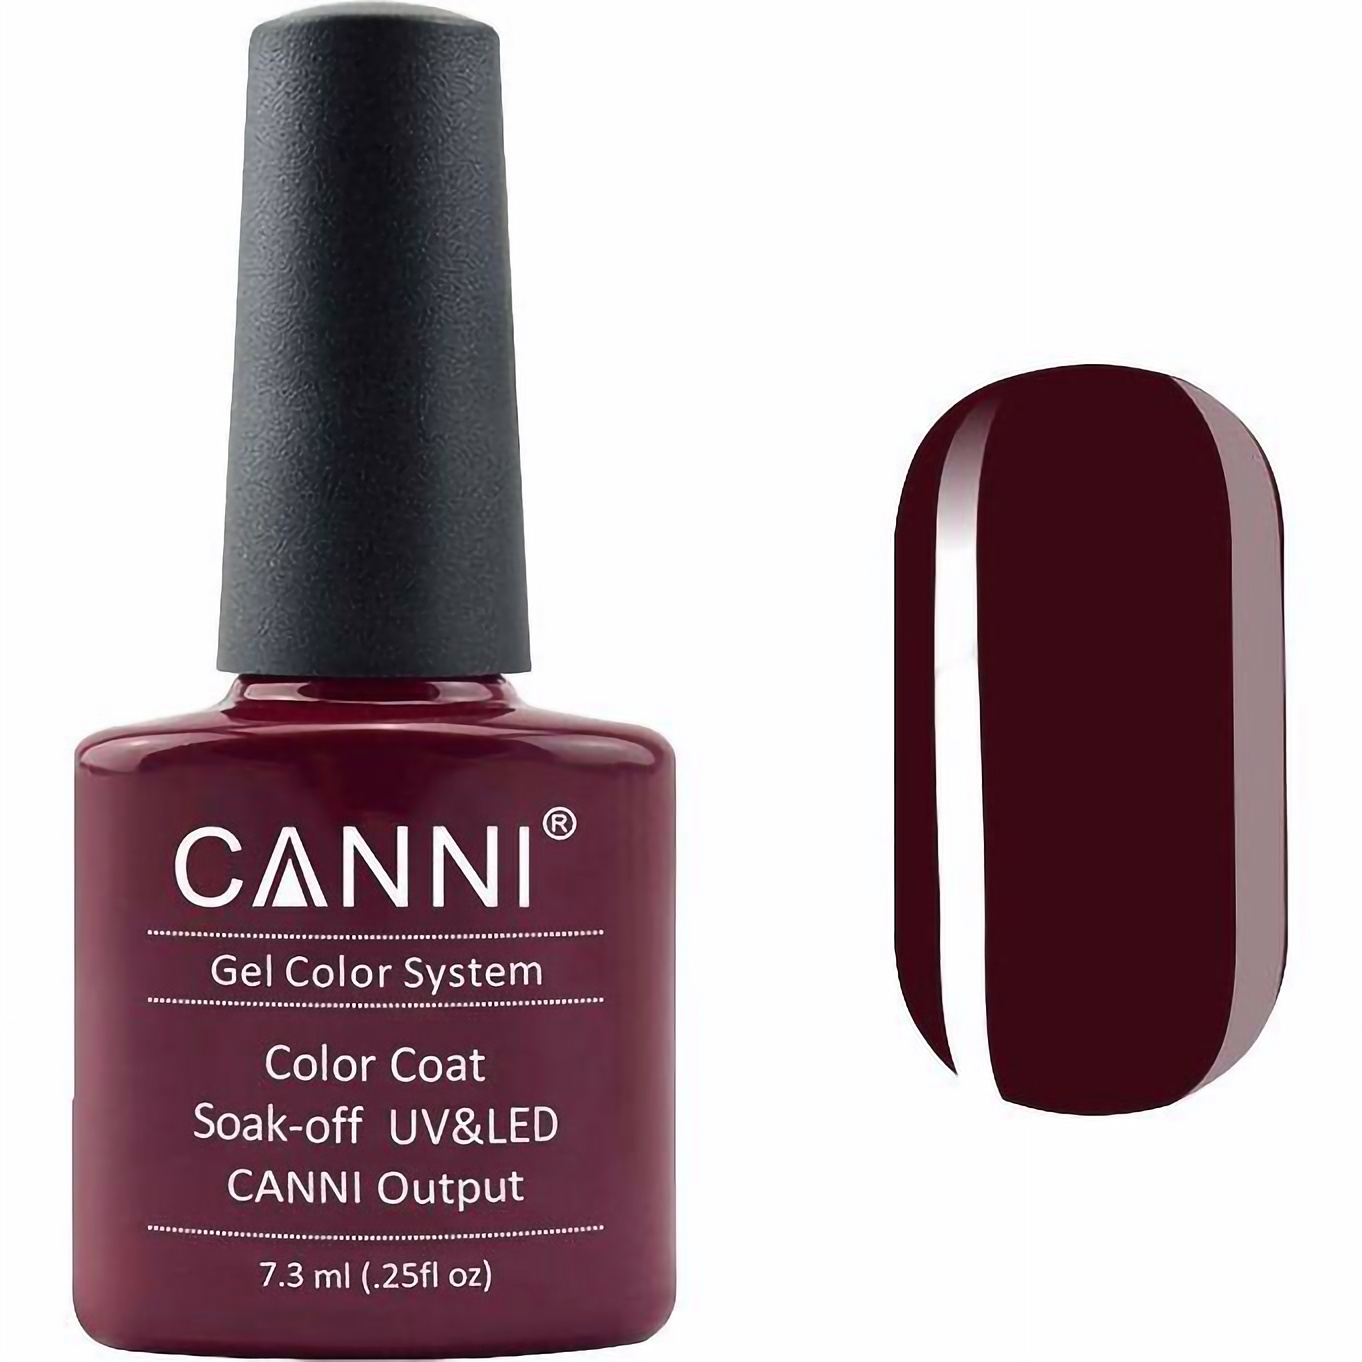 Гель-лак Canni Color Coat Soak-off UV&LED 124 темно-коричневий 7.3 мл - фото 1